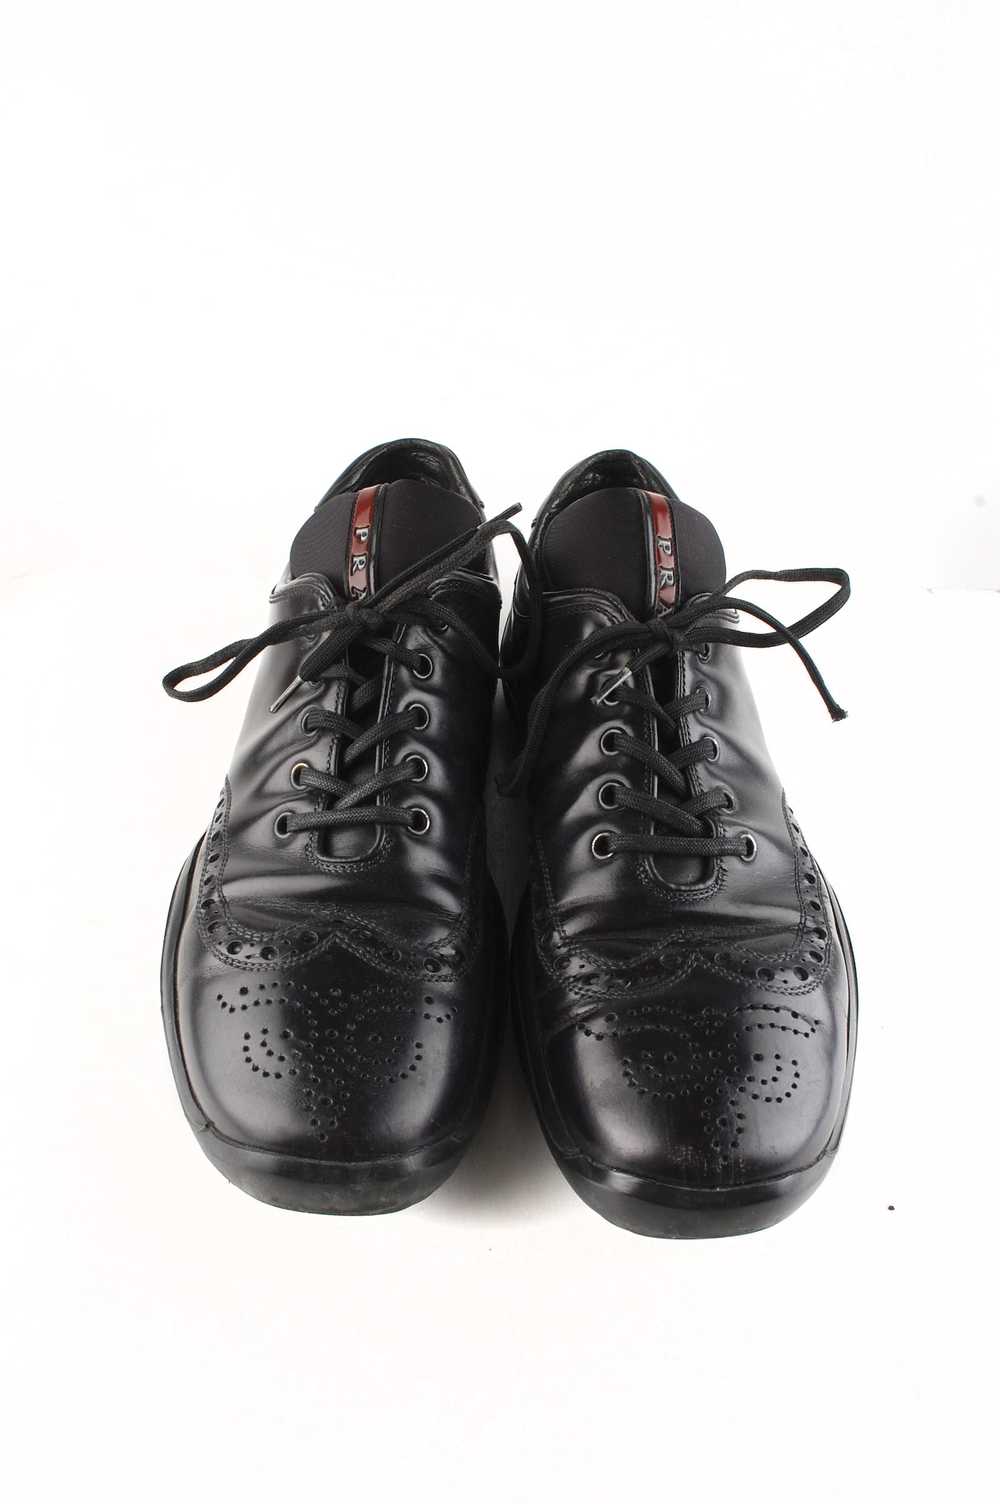 Prada Original Prada Leather Oxford Shoes sz.42EU… - image 2